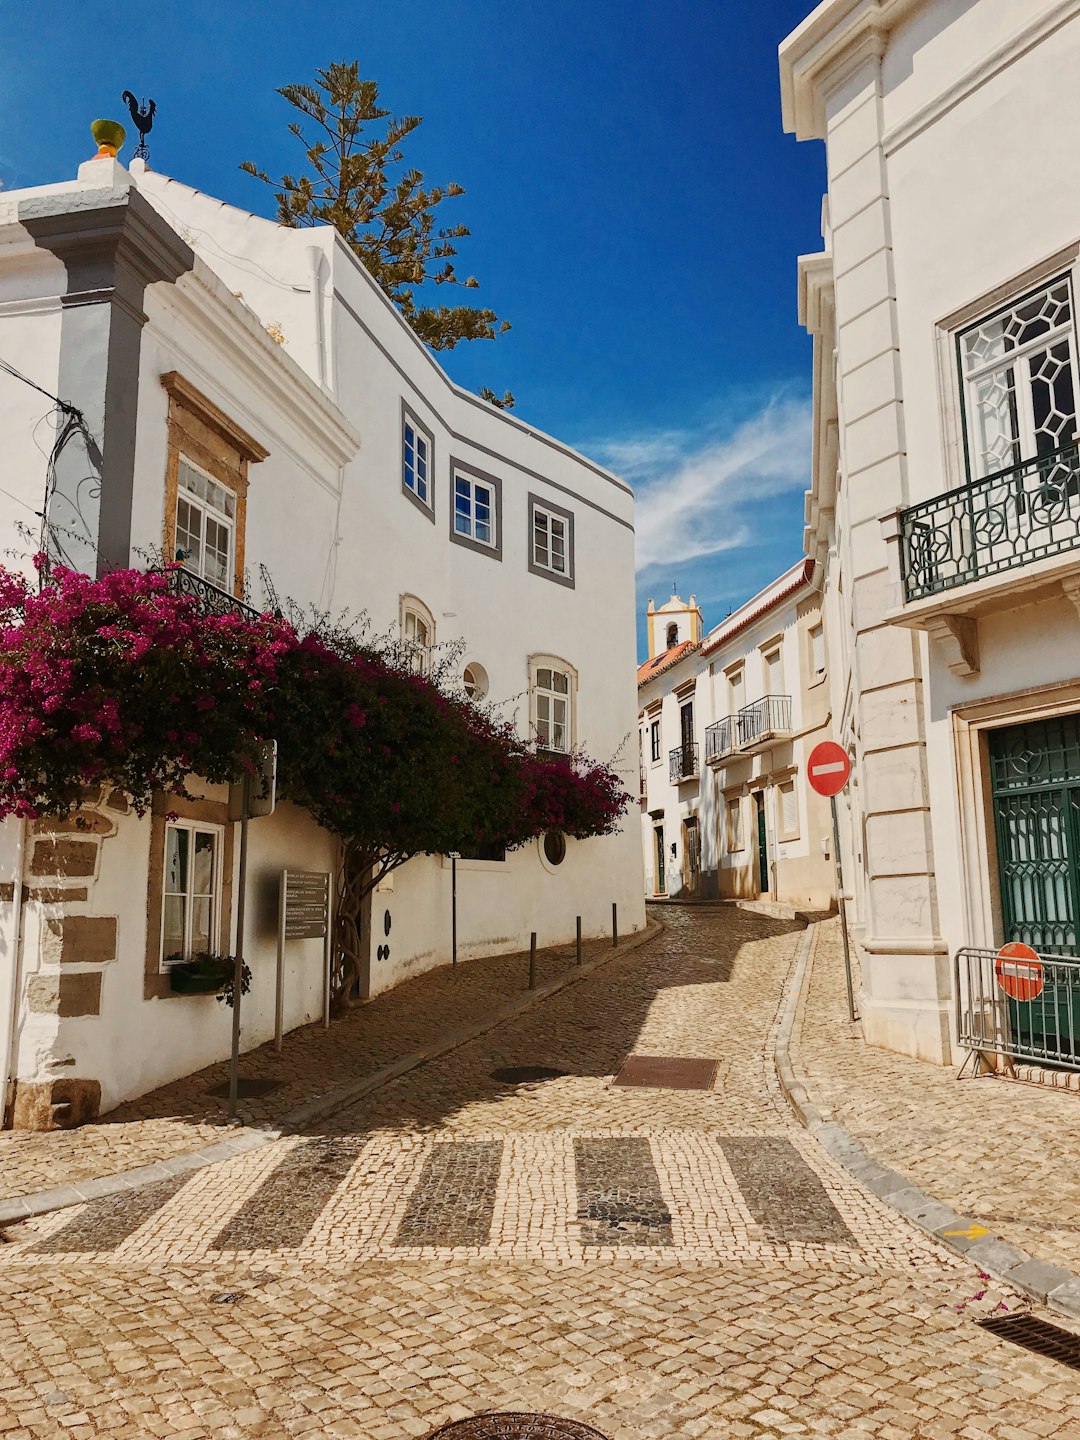 Town photo spot Tavira Algarve